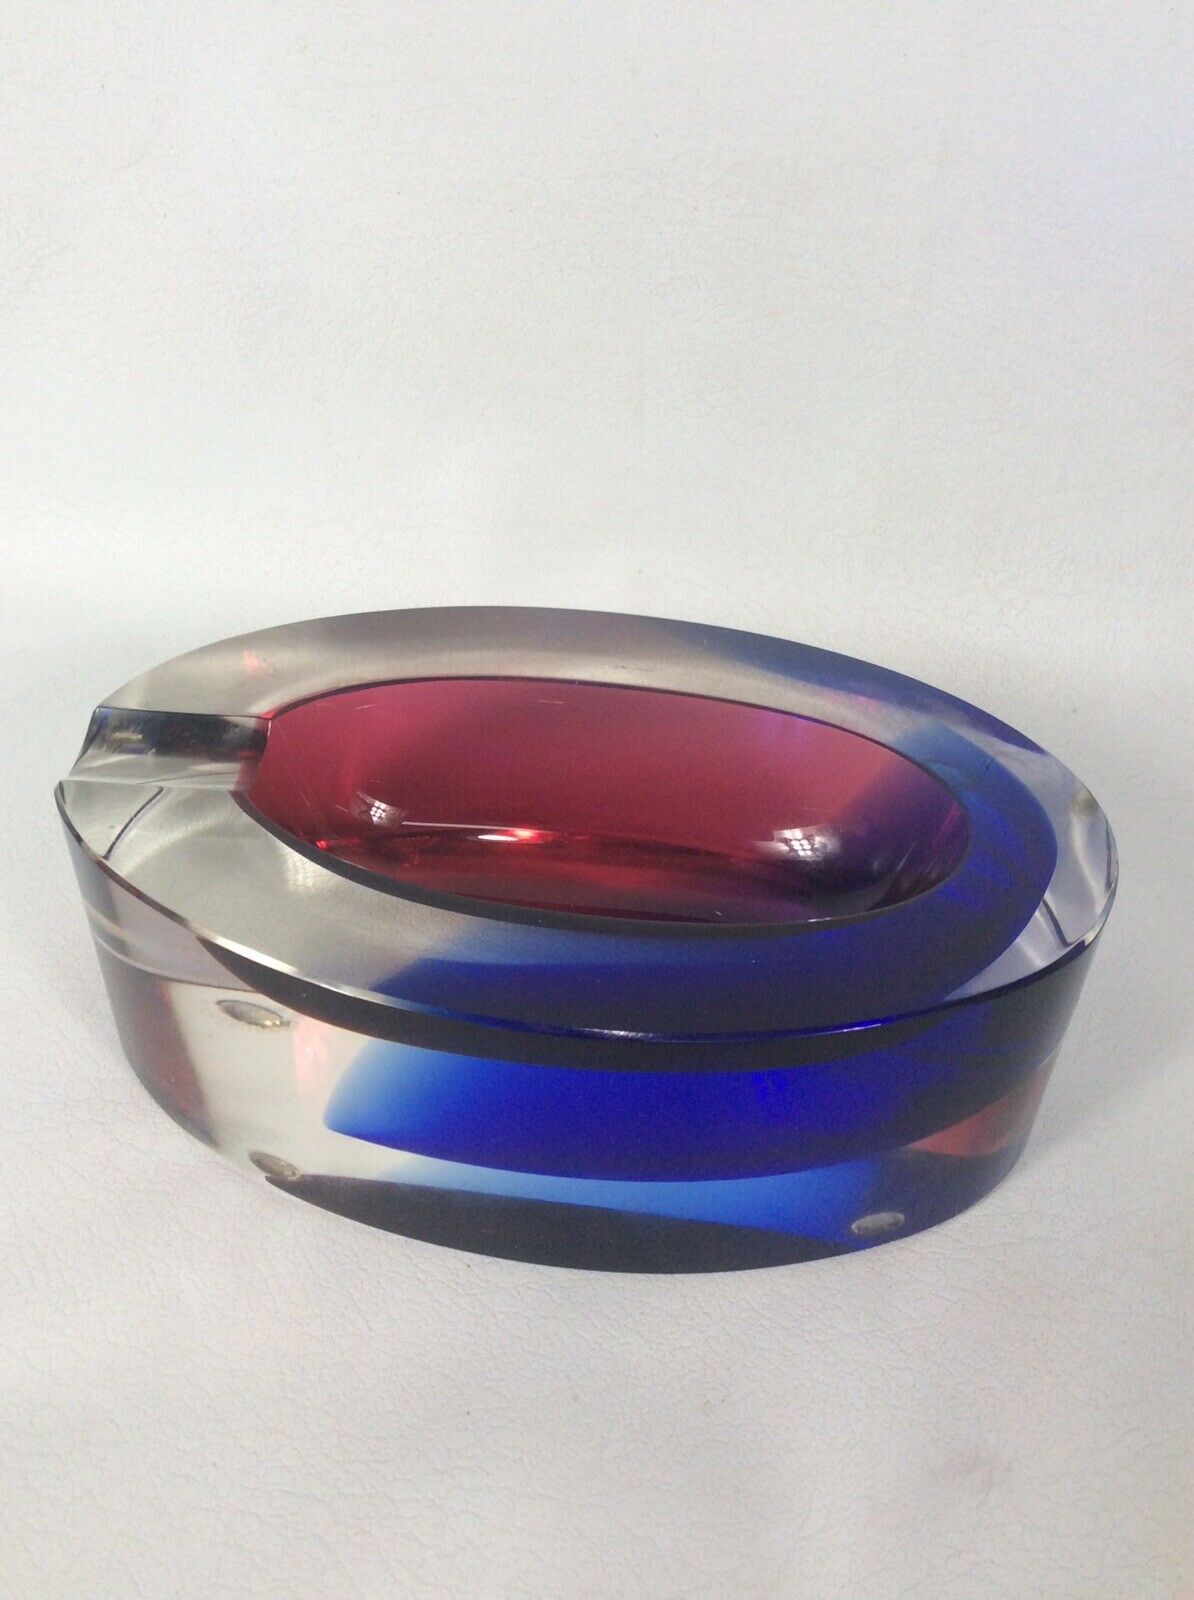 Beautiful Vtg. Modernist Italy Mandruzzato Art Glass Ashtray